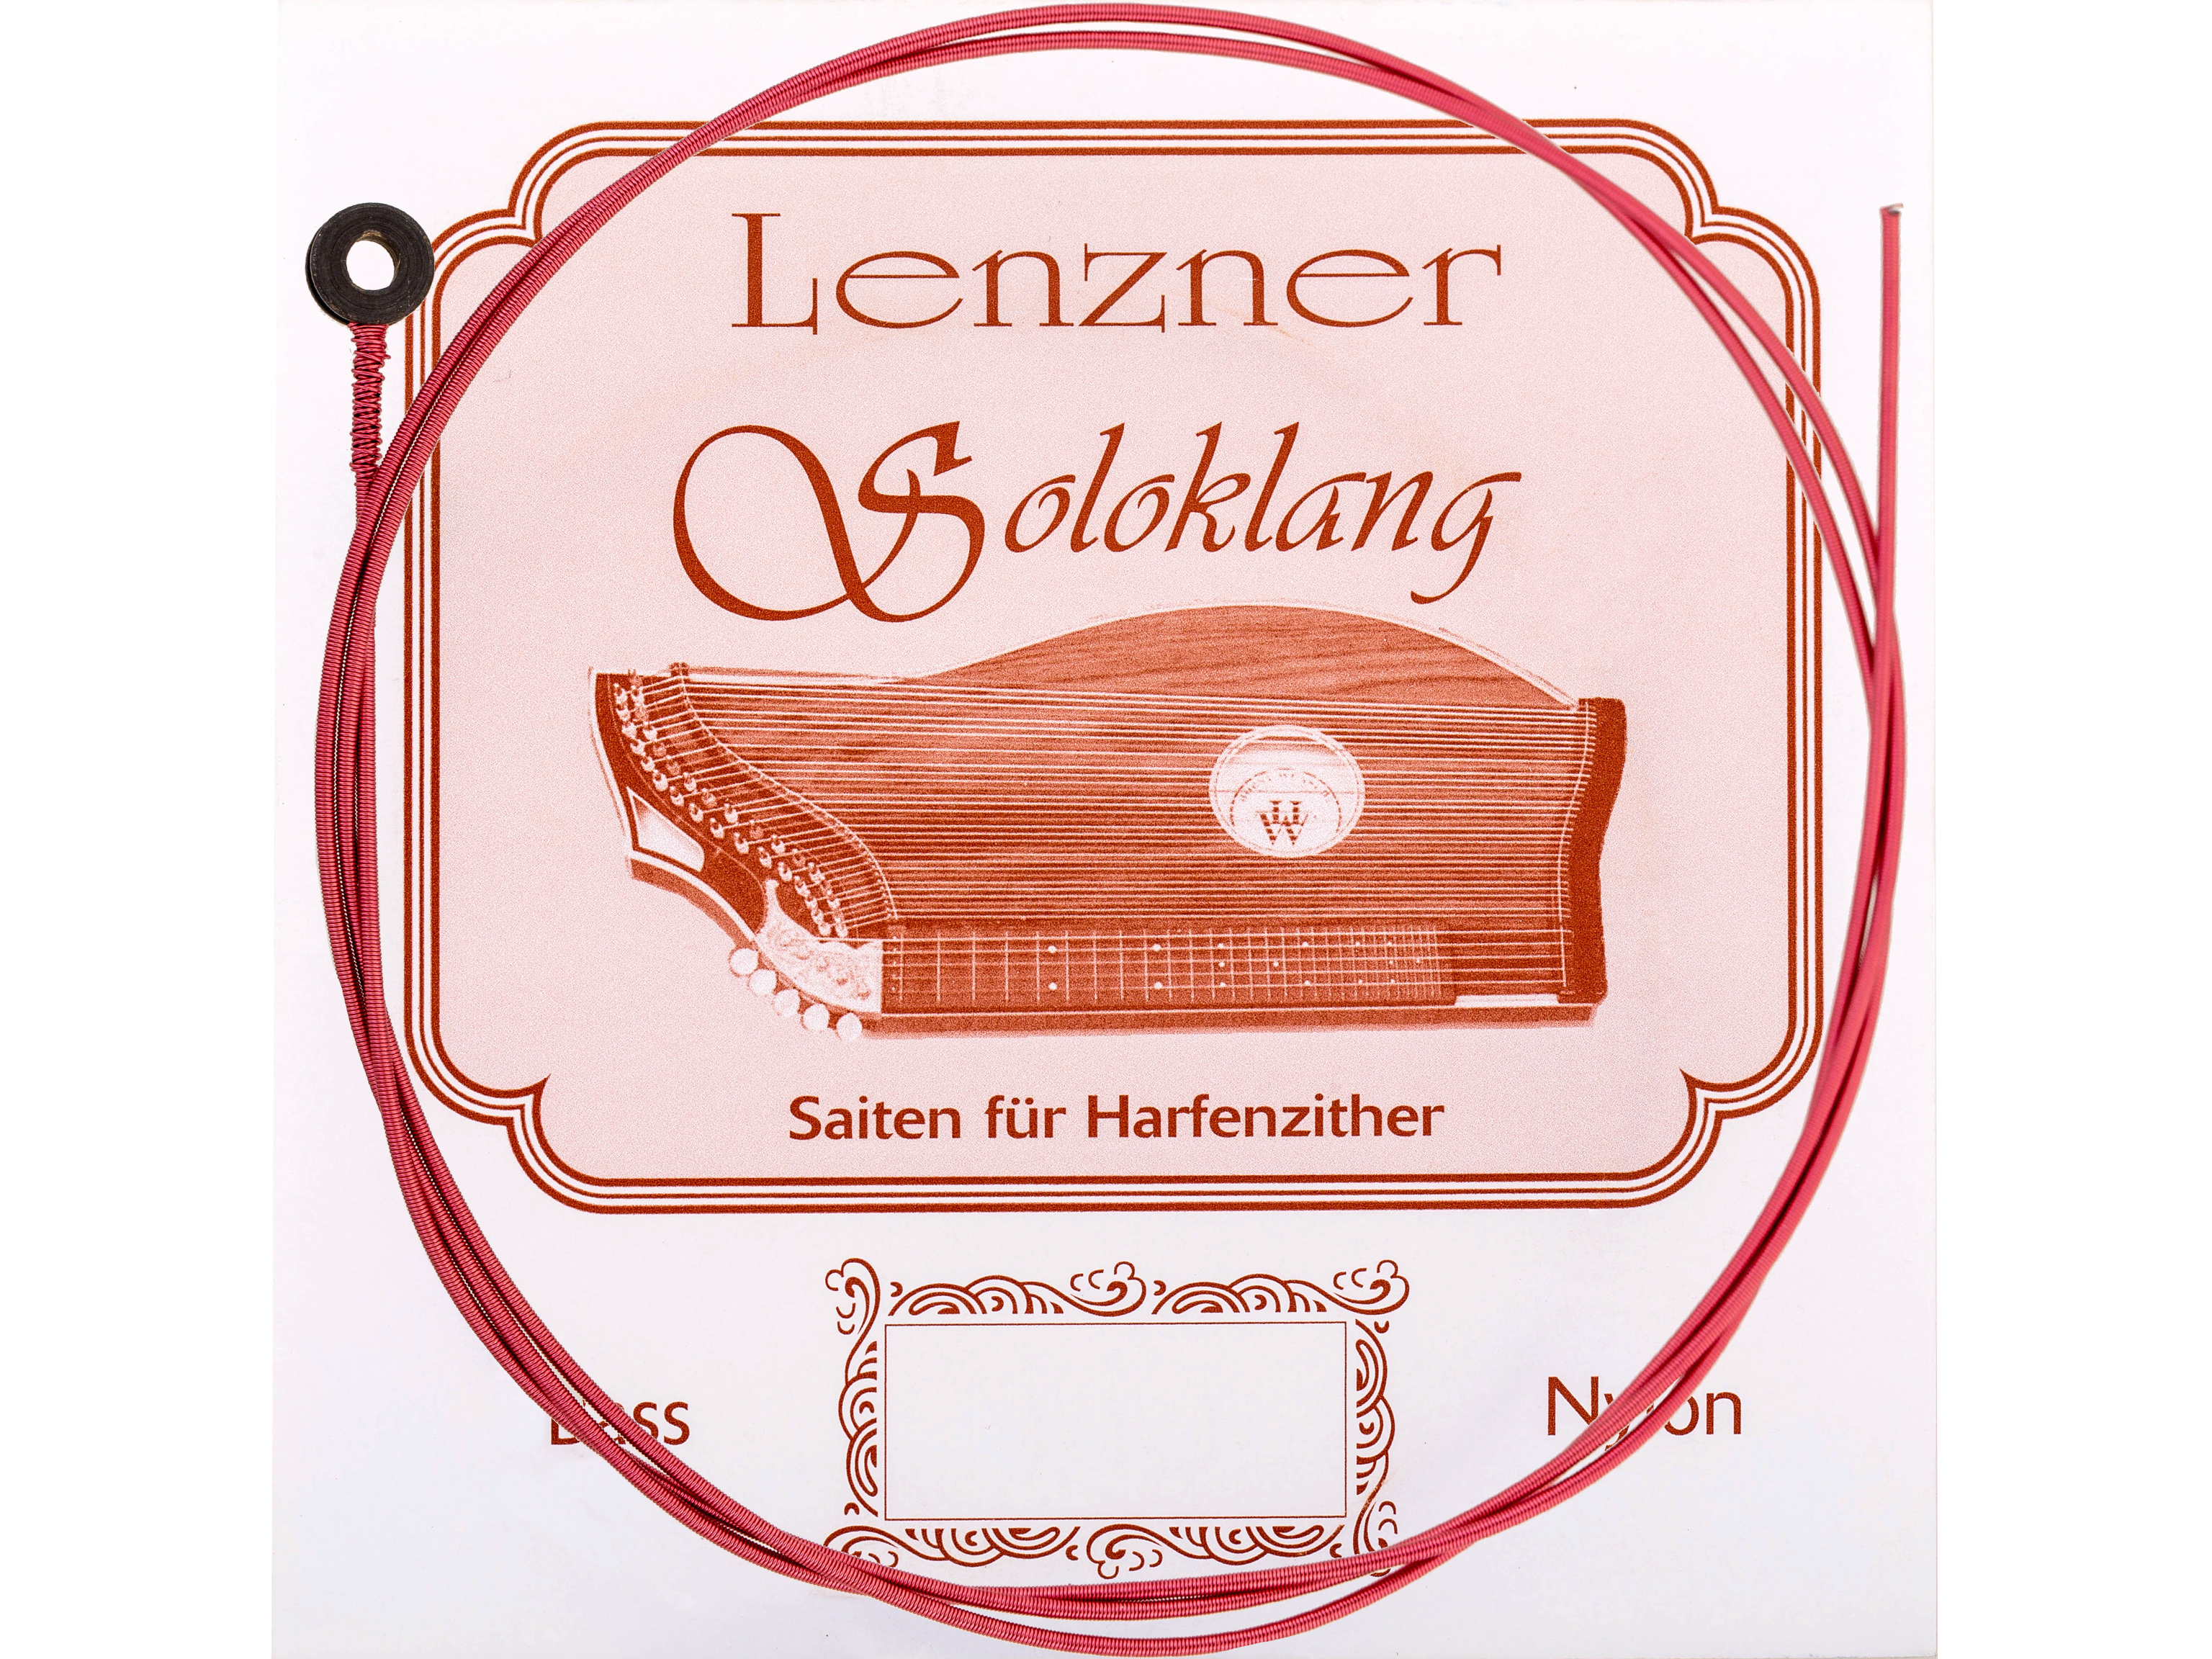 Lenzner E 20.Zithersaite Soloklang Bass